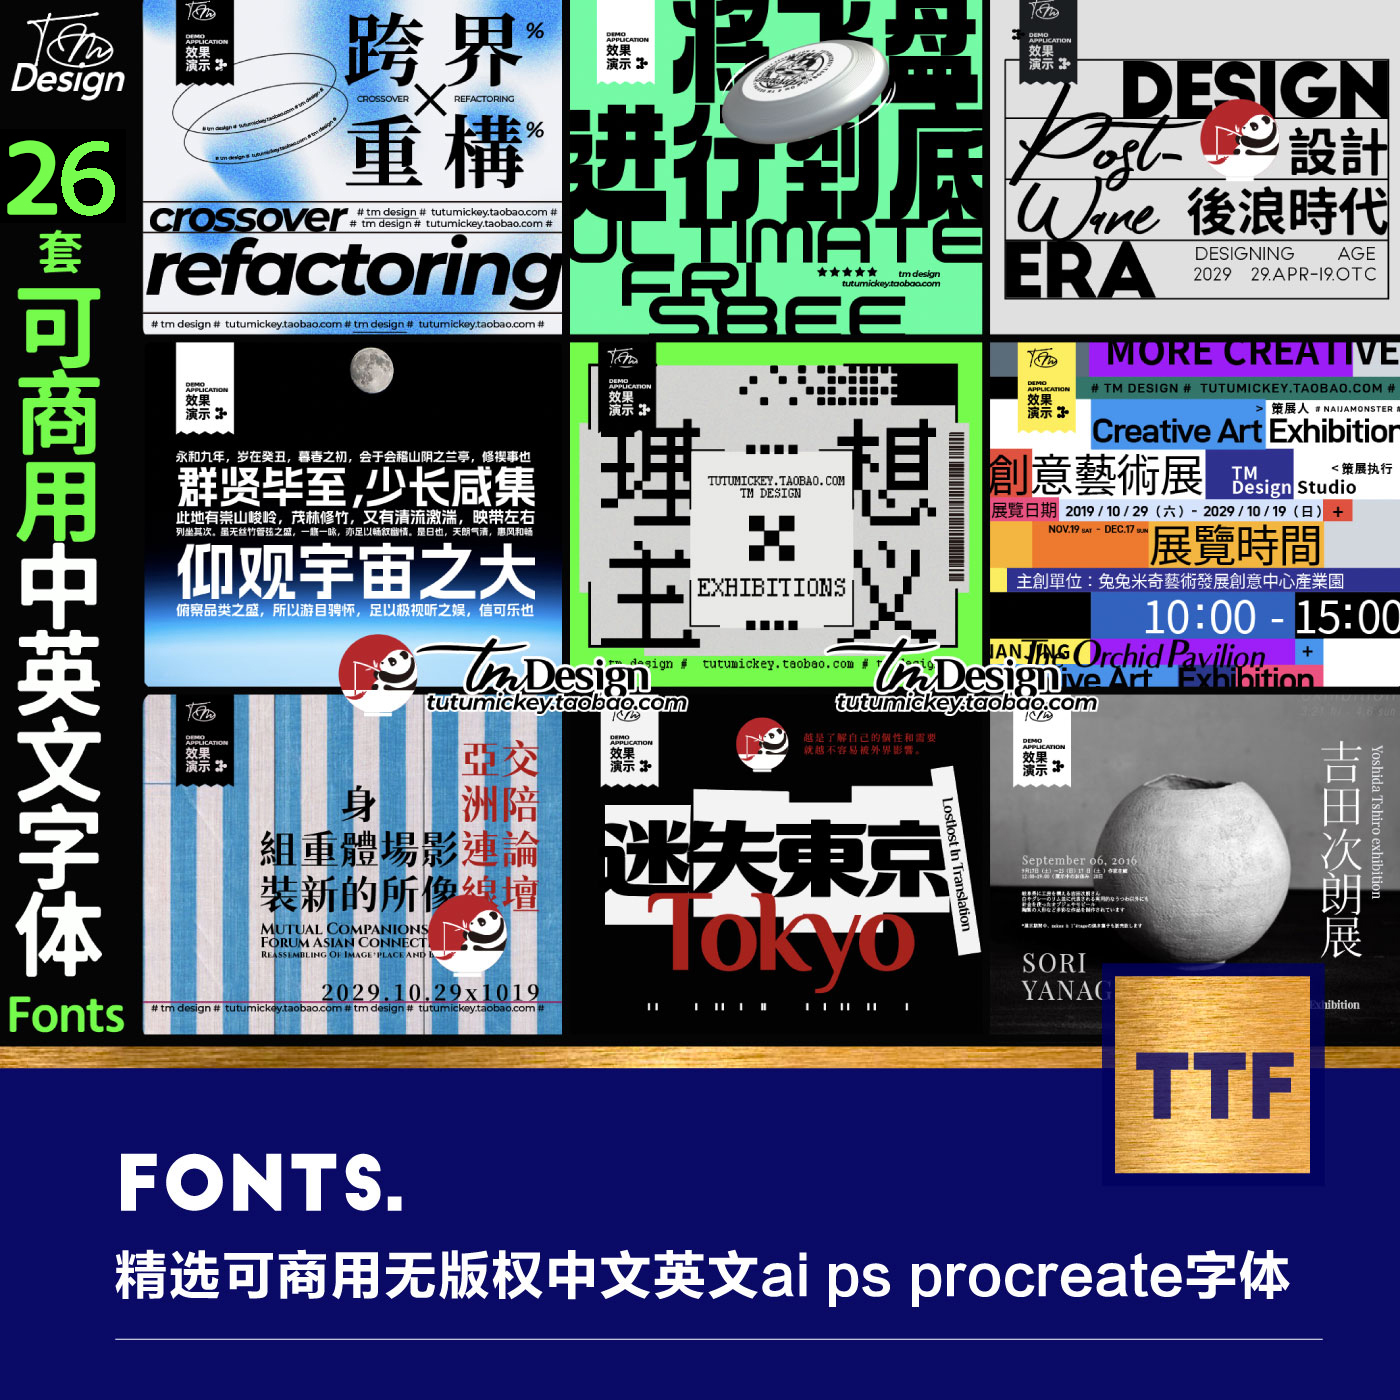 52款精选可商用无版权开源中文英文ai ps procreate 字体设计素材